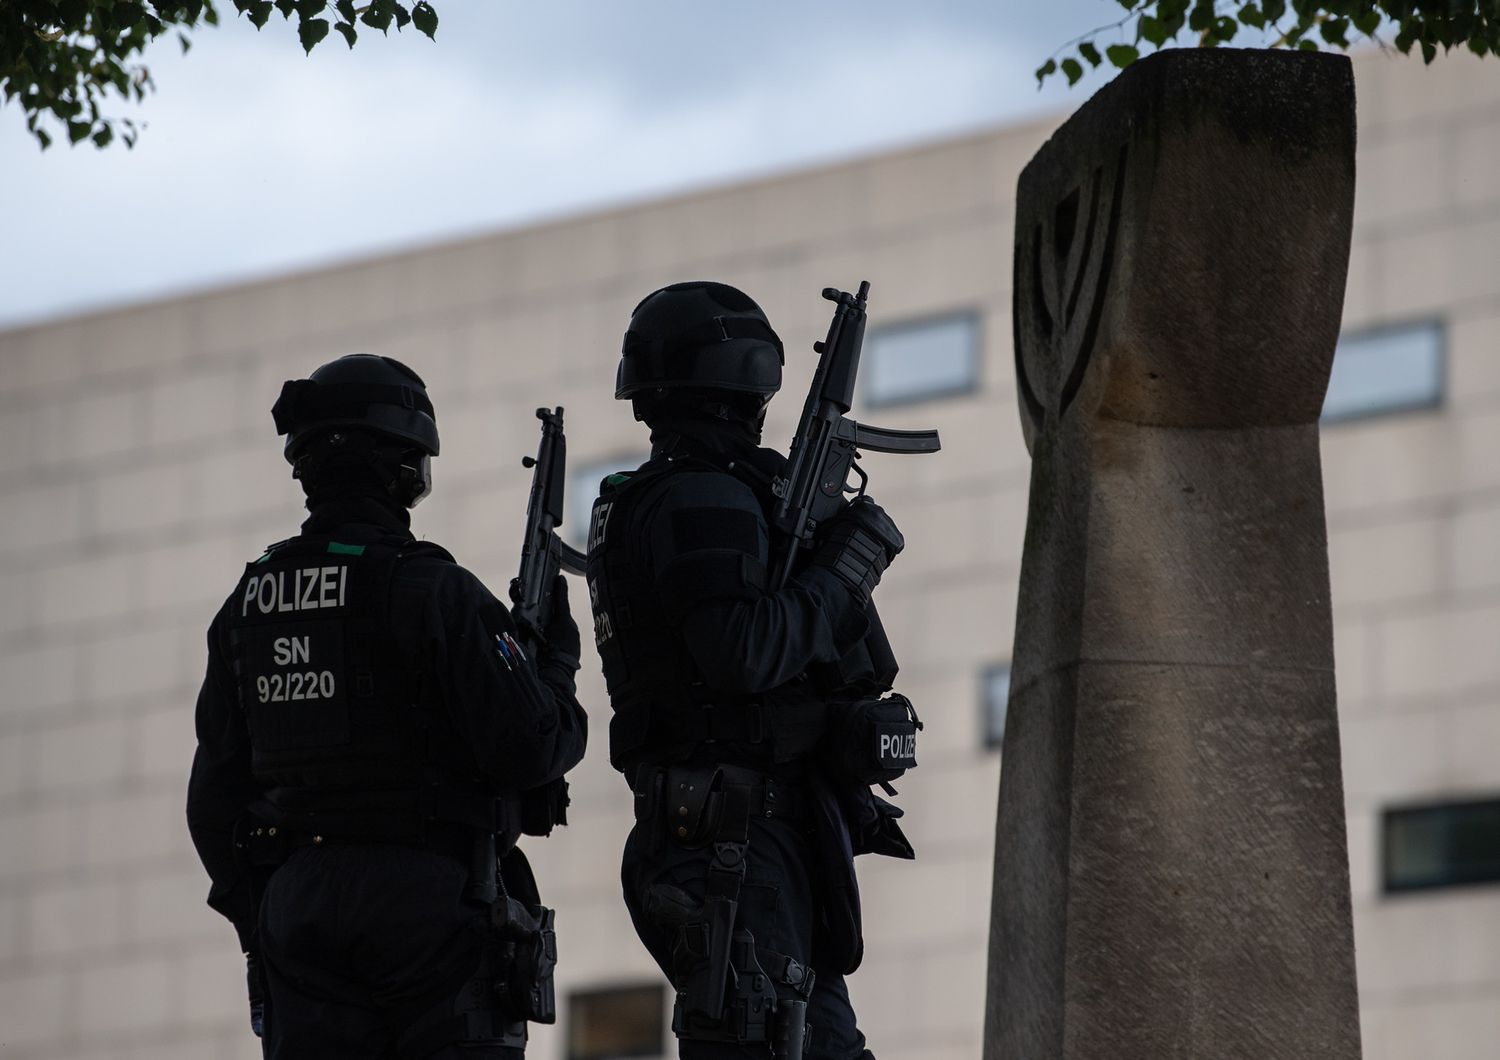 Germania, polizia davanti la Sinagoga dove un commando ha colpito uccidendo due persone&nbsp;